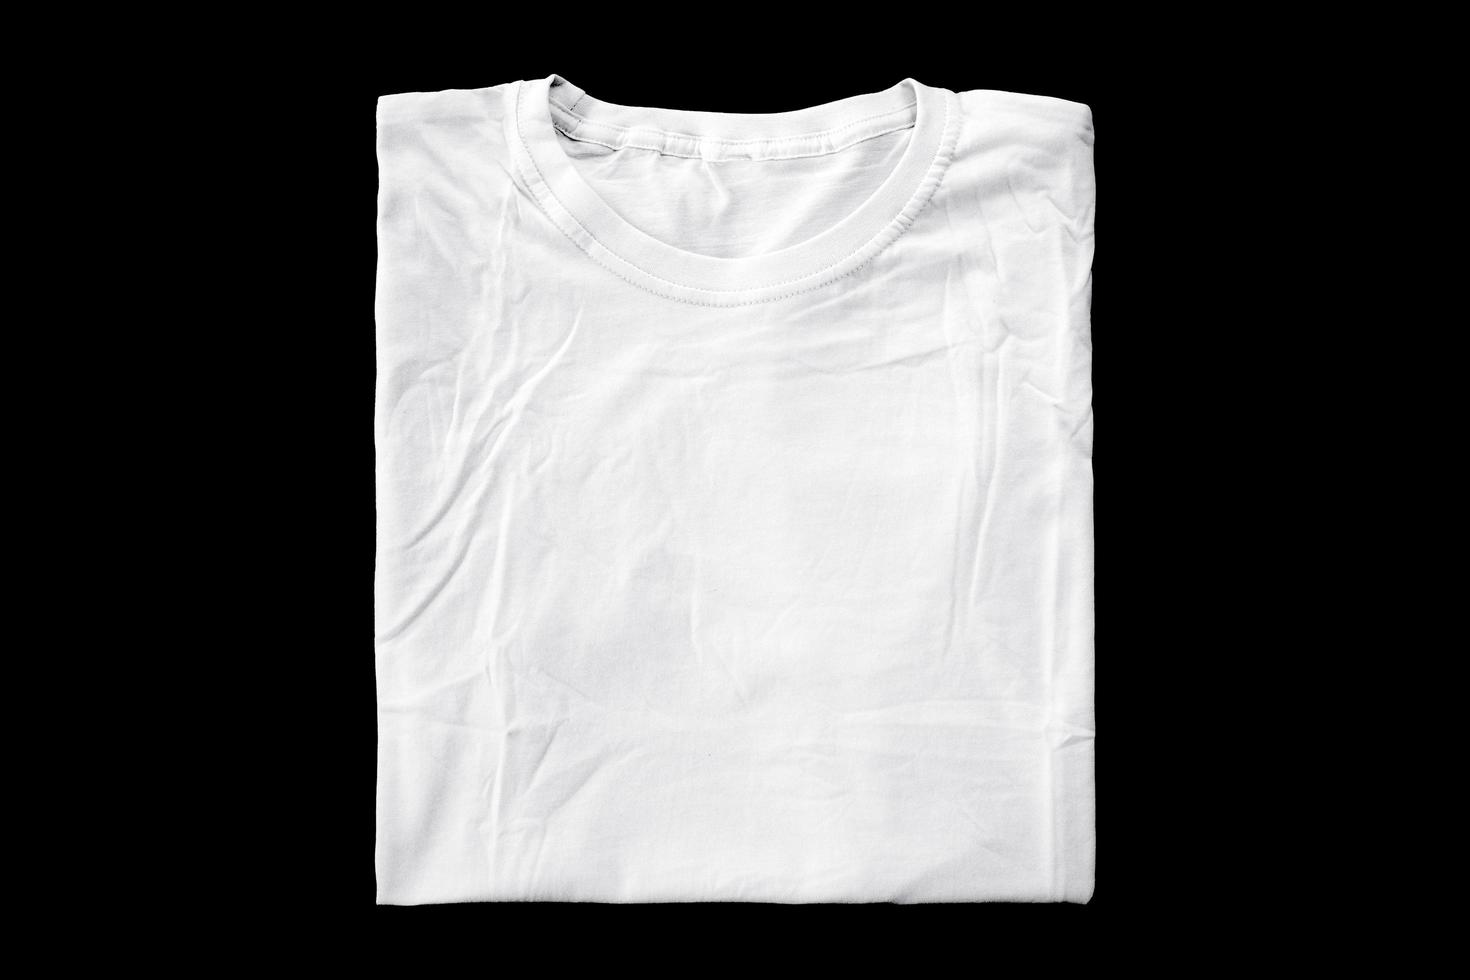 t-shirts blancs pliés pour les maquettes de badges. t-shirt uni avec fond noir pour un aperçu du design. photo